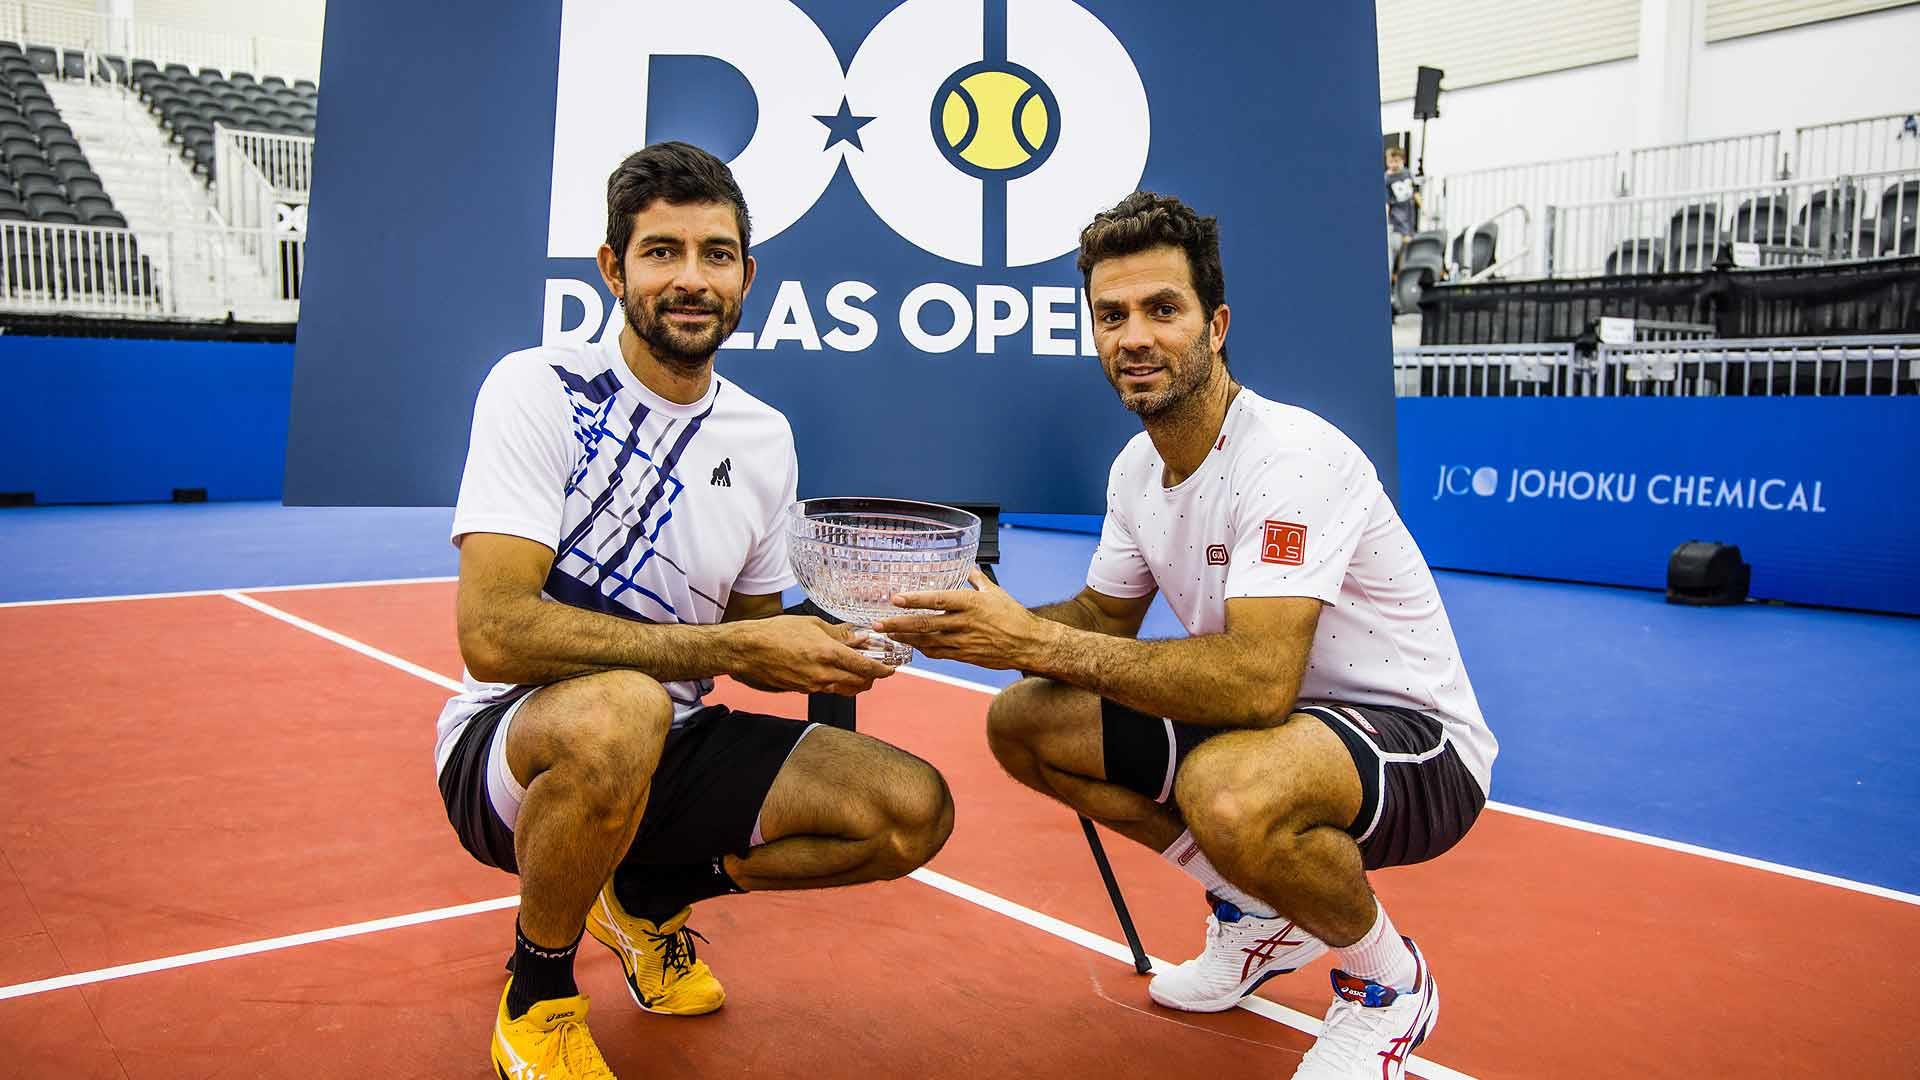 Roland-Garros: Arevalo et Rojer remportent le titre en double